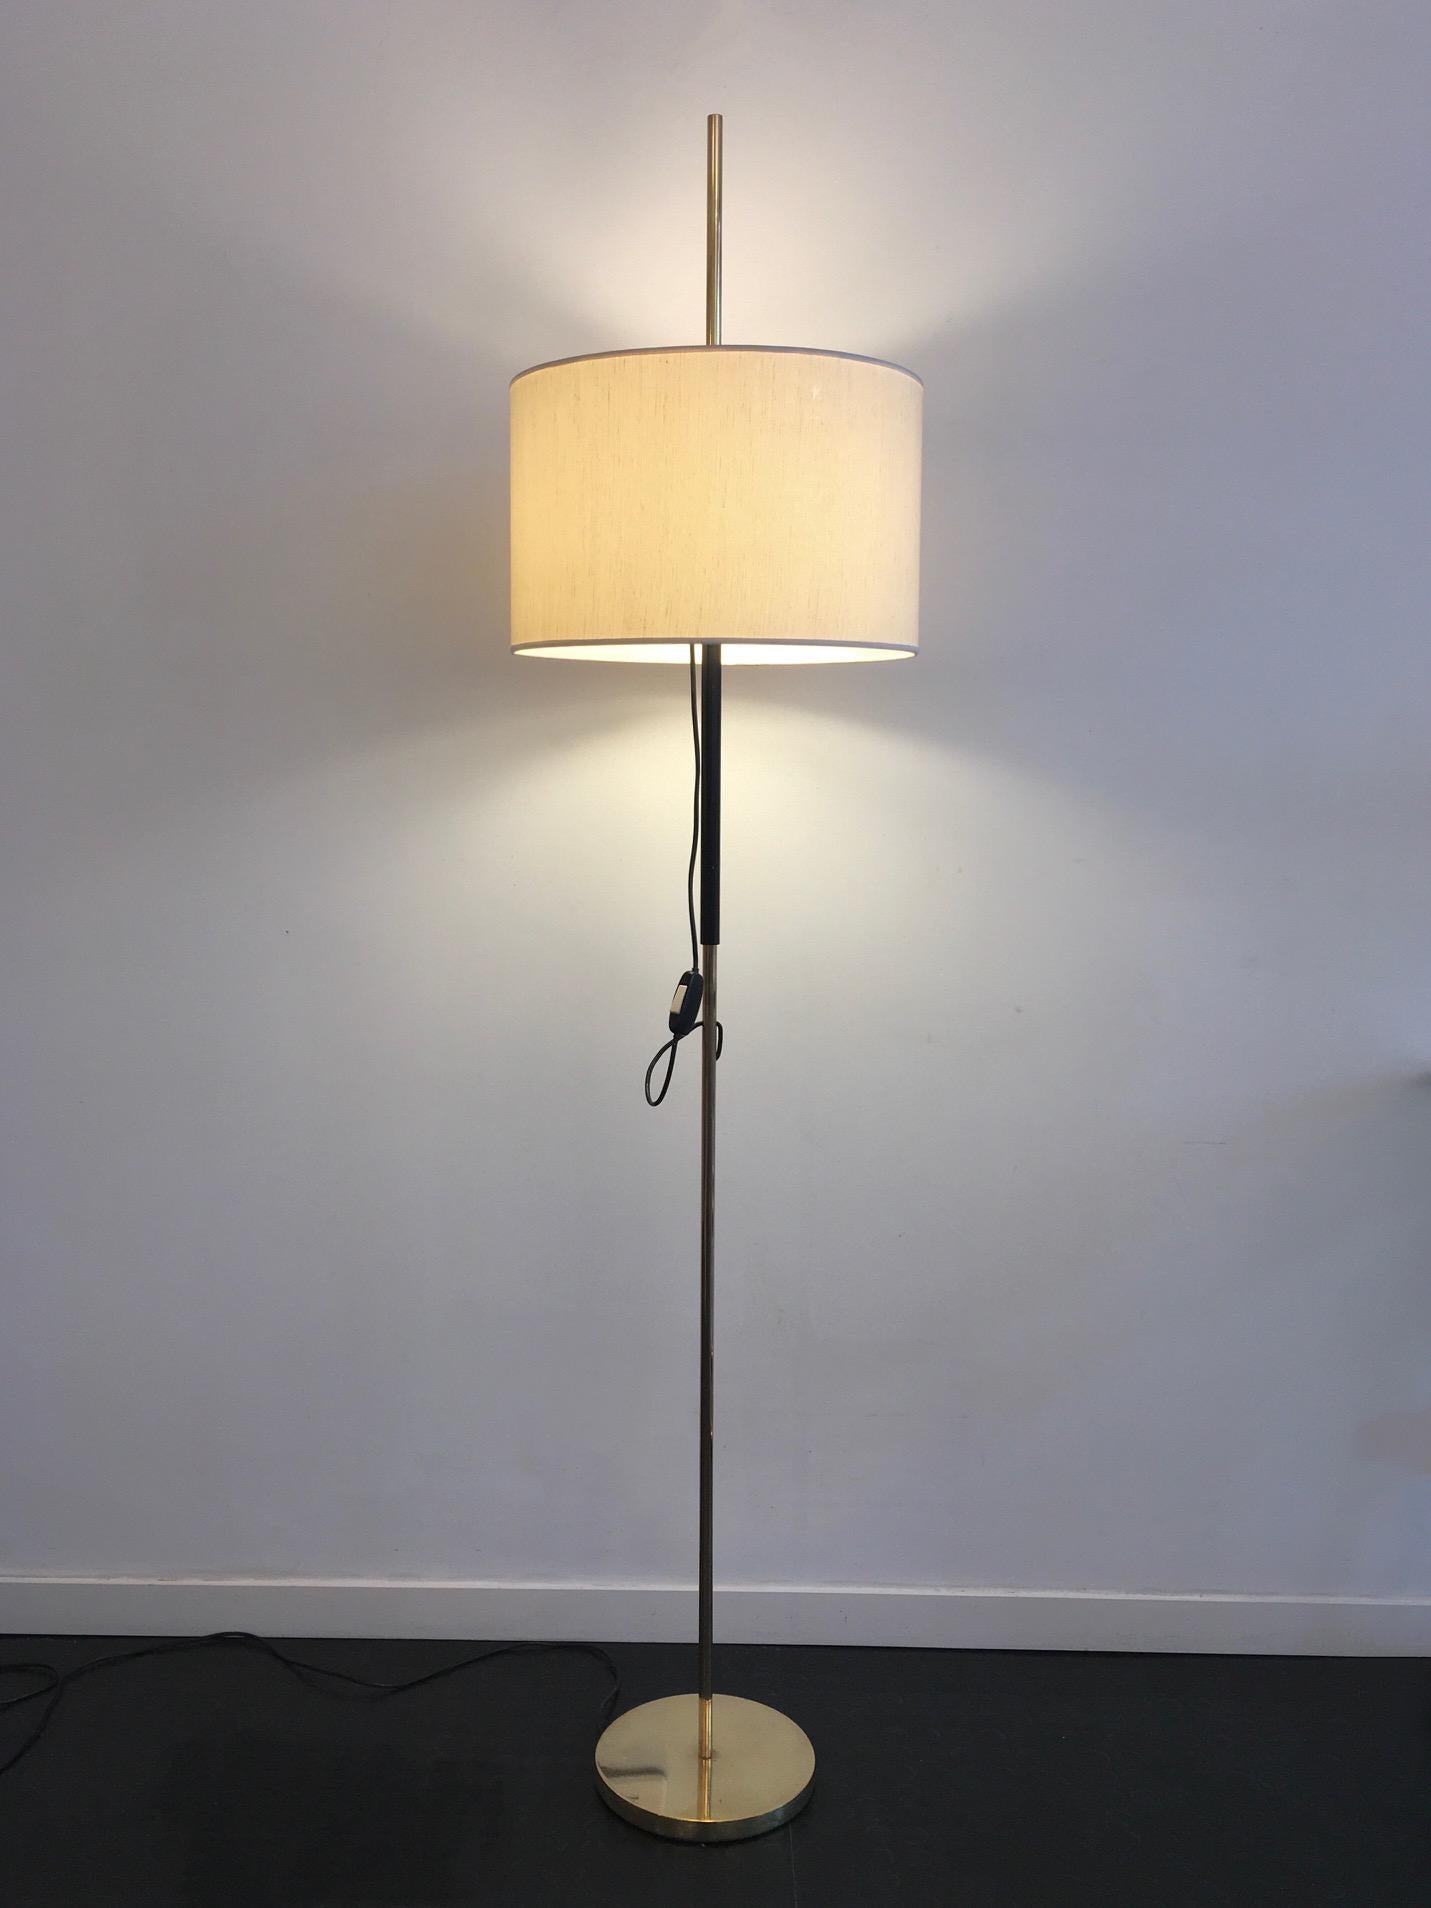 Iconique luminaire conçu par Angelo Ostuni et renato Forti en 1956, l'abat jour est fixé sur un manchon téléscopique qui permet d'en faire varier la hauteur et offrant la double option de la lampe de sol classique ou de la liseuse. 
L'abat jour